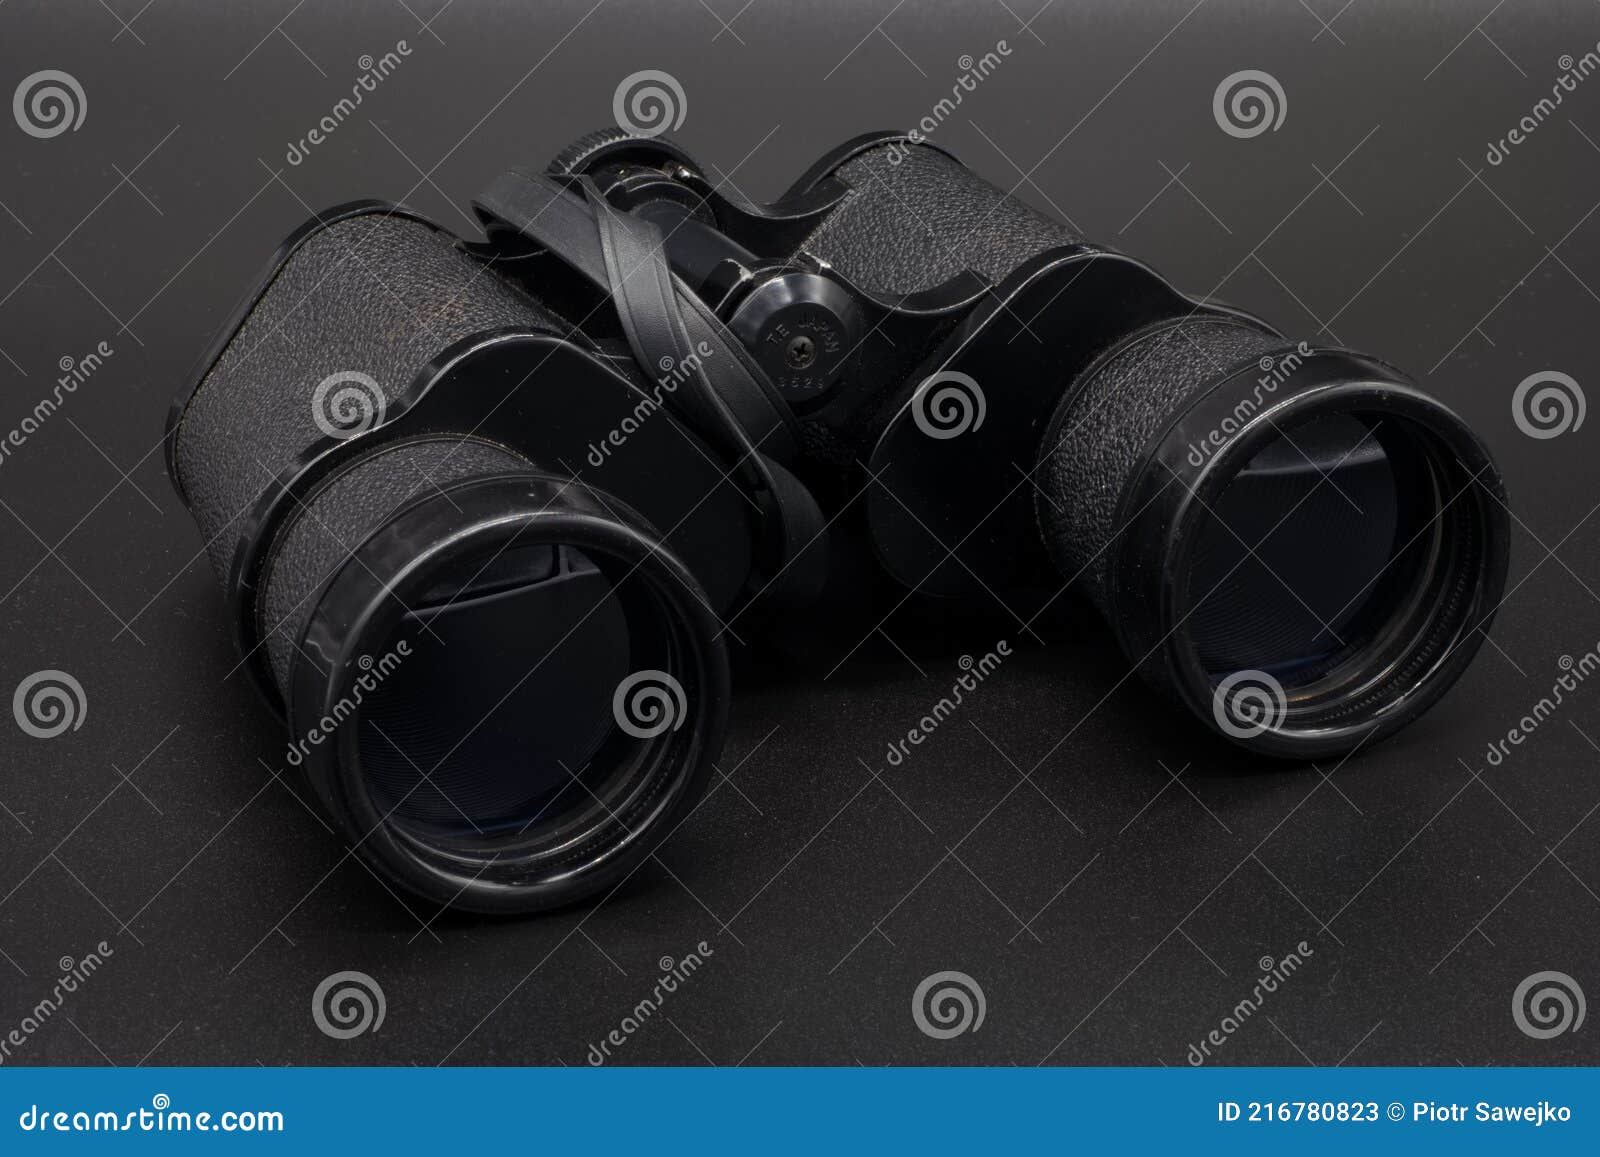 binocular lens plastic black lens